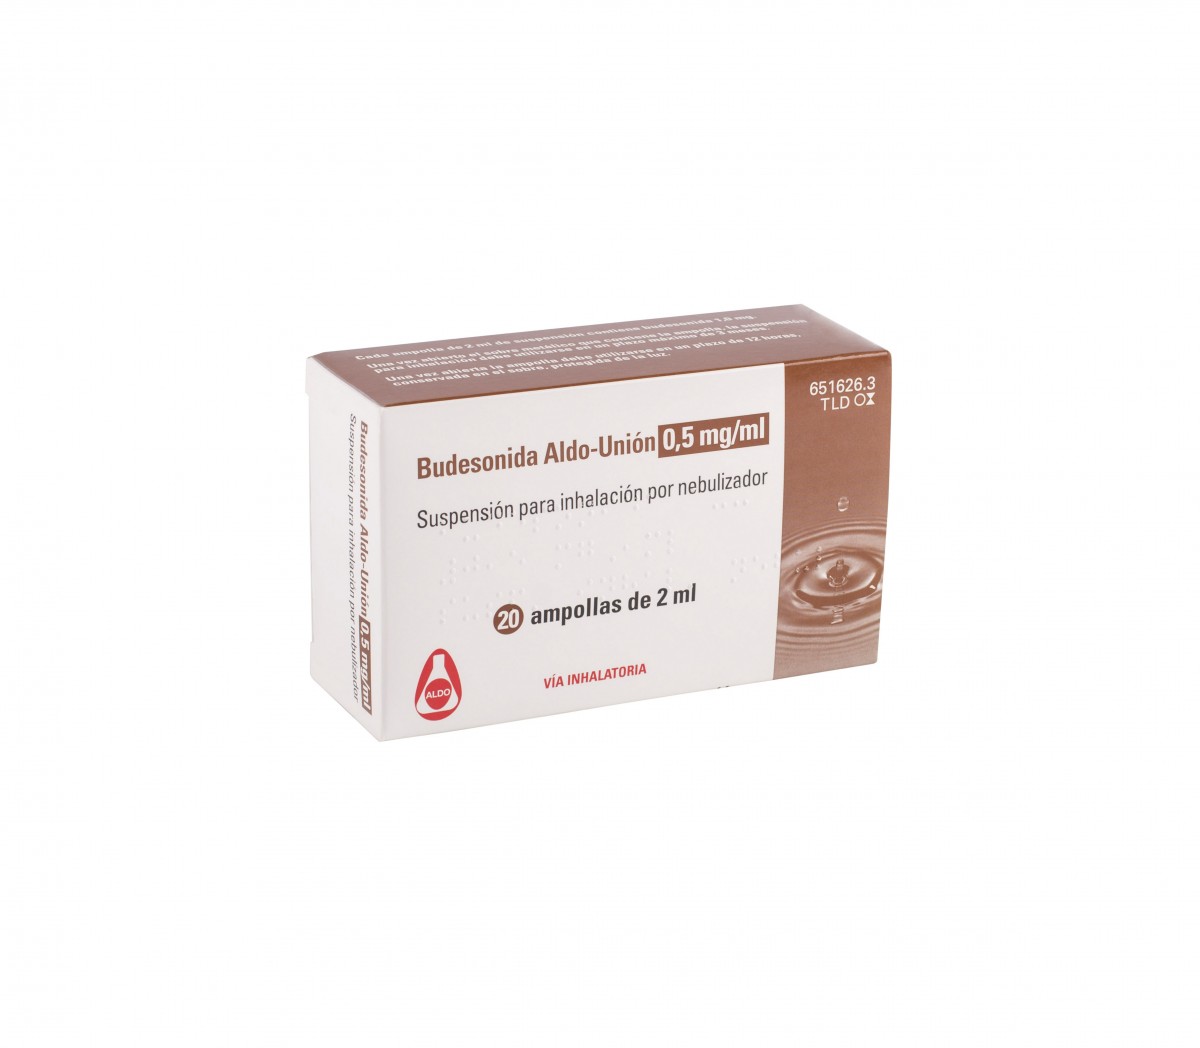 BUDESONIDA ALDO-UNION 0,5 mg/ml SUSPENSION PARA INHALACION POR NEBULIZADOR , 20 ampollas de 2 ml fotografía del envase.